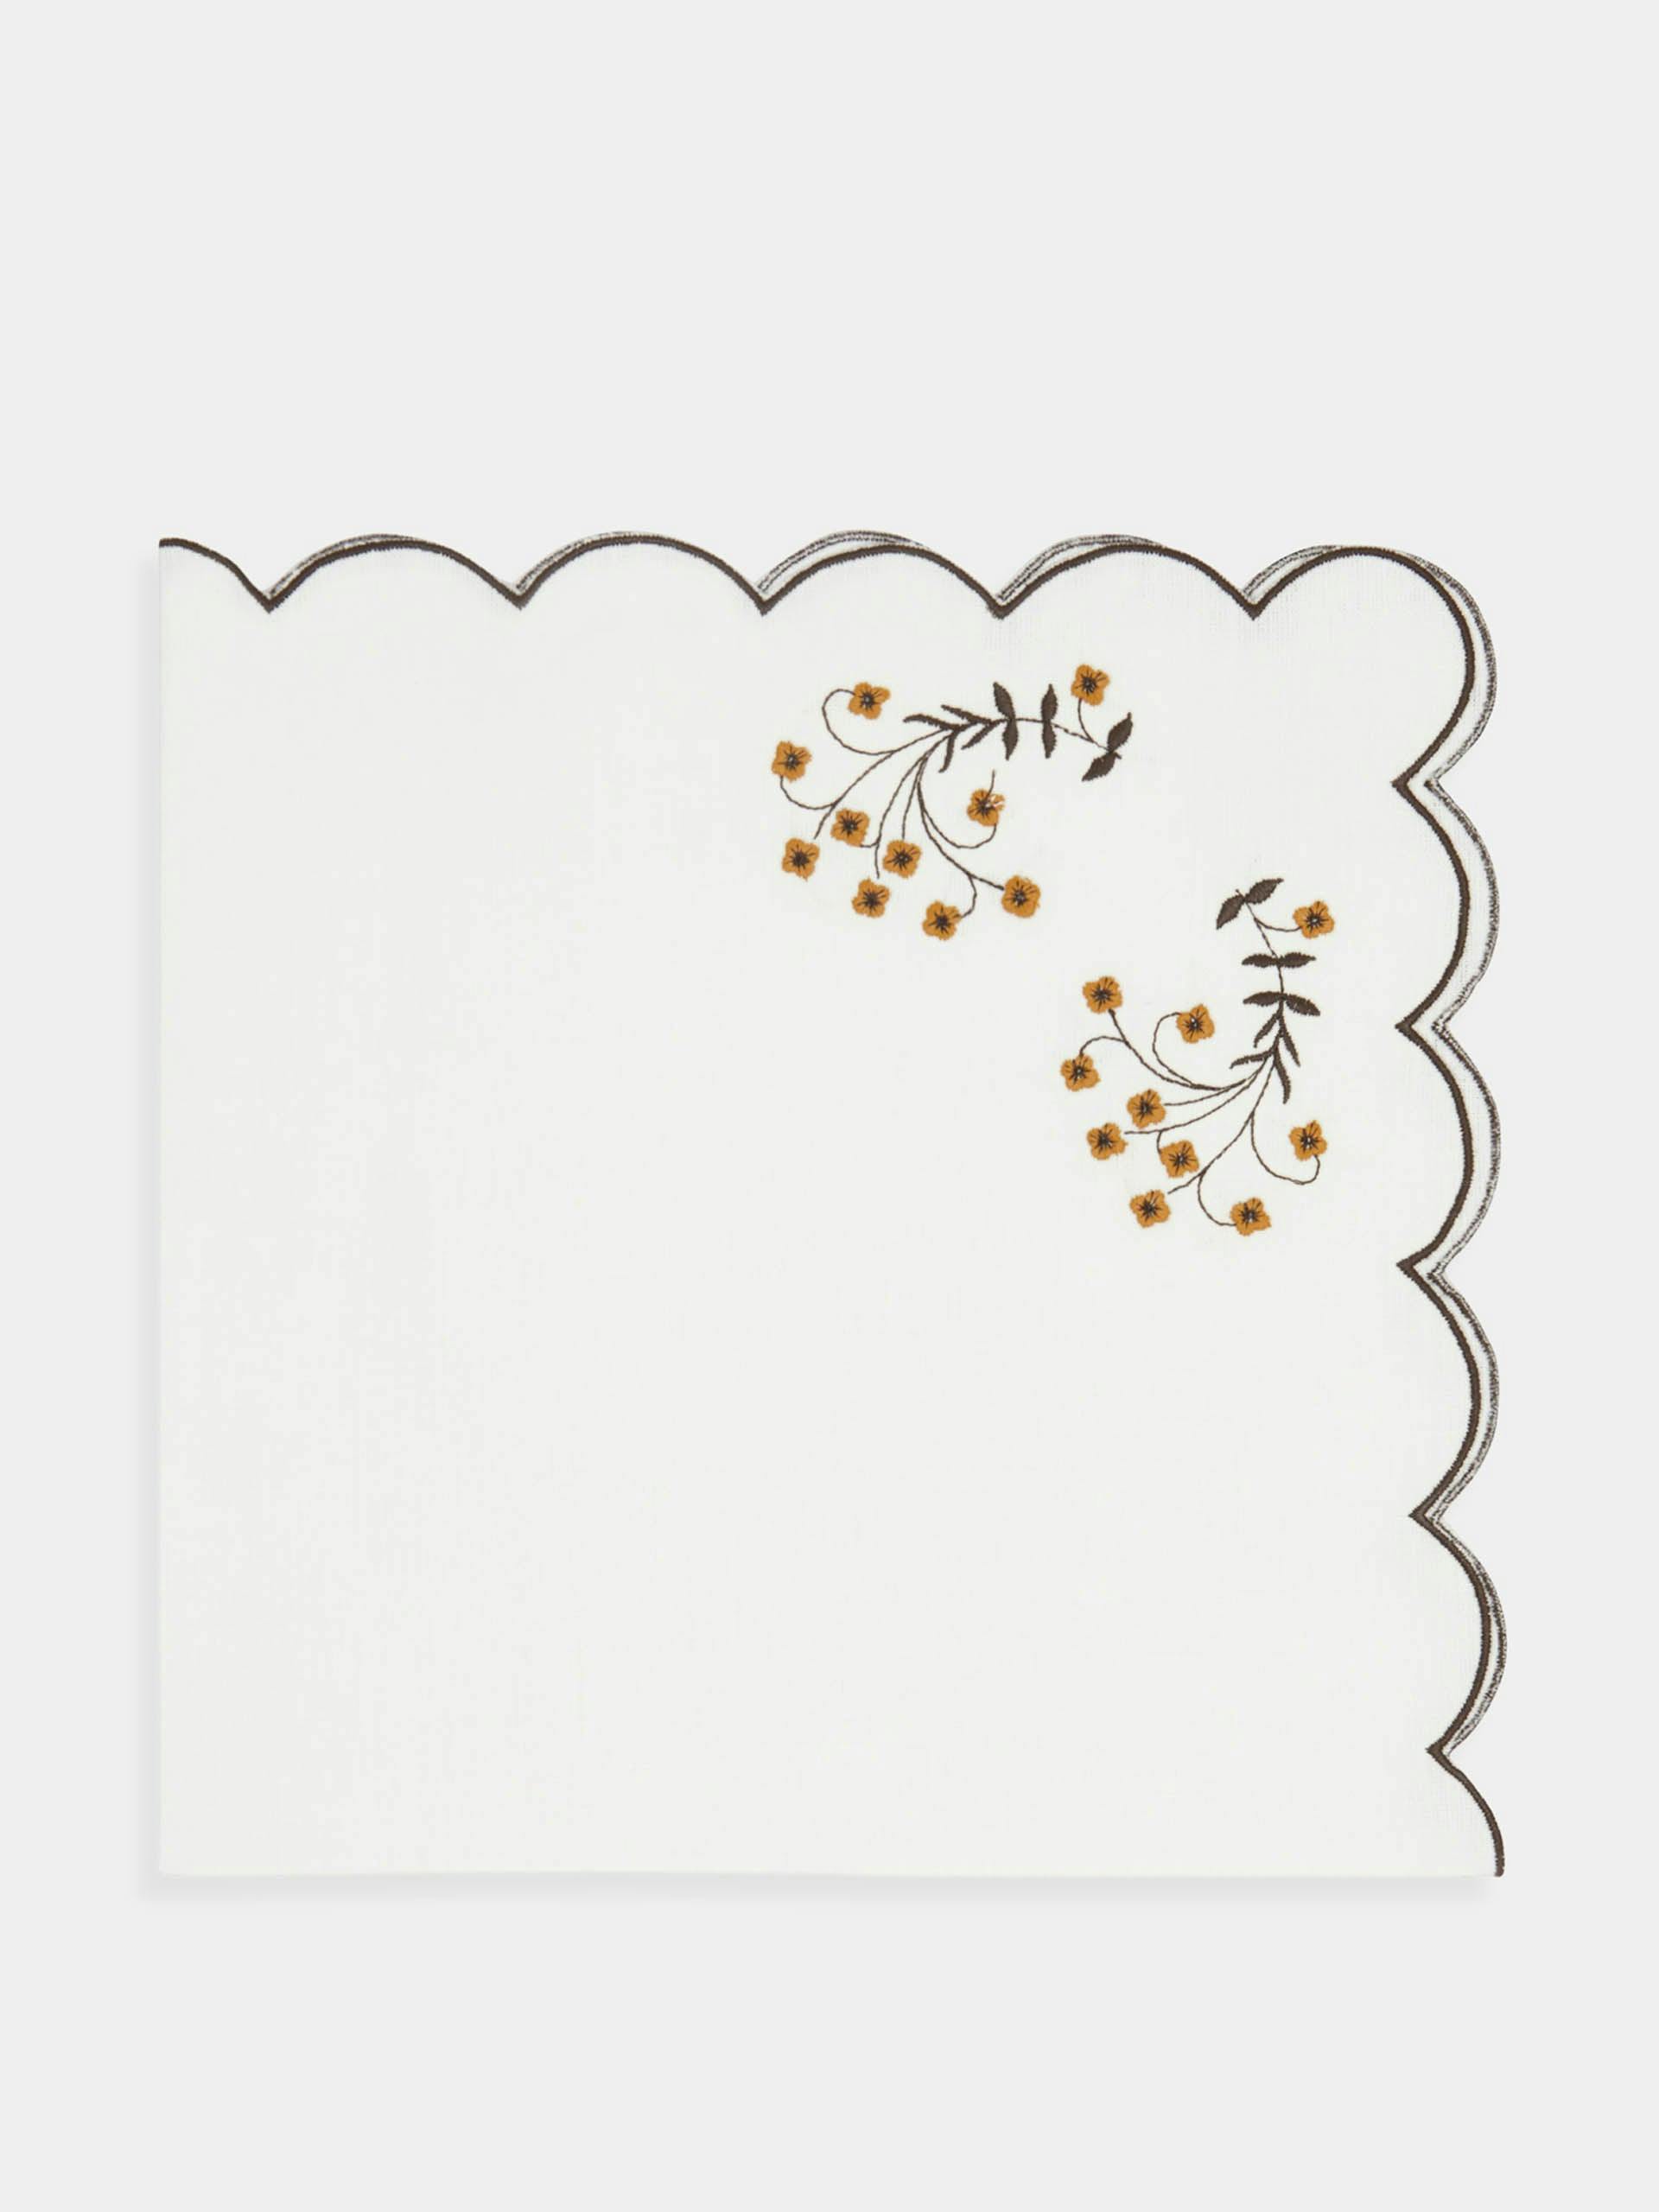 Spring embroidered linen napkins (set of 4)